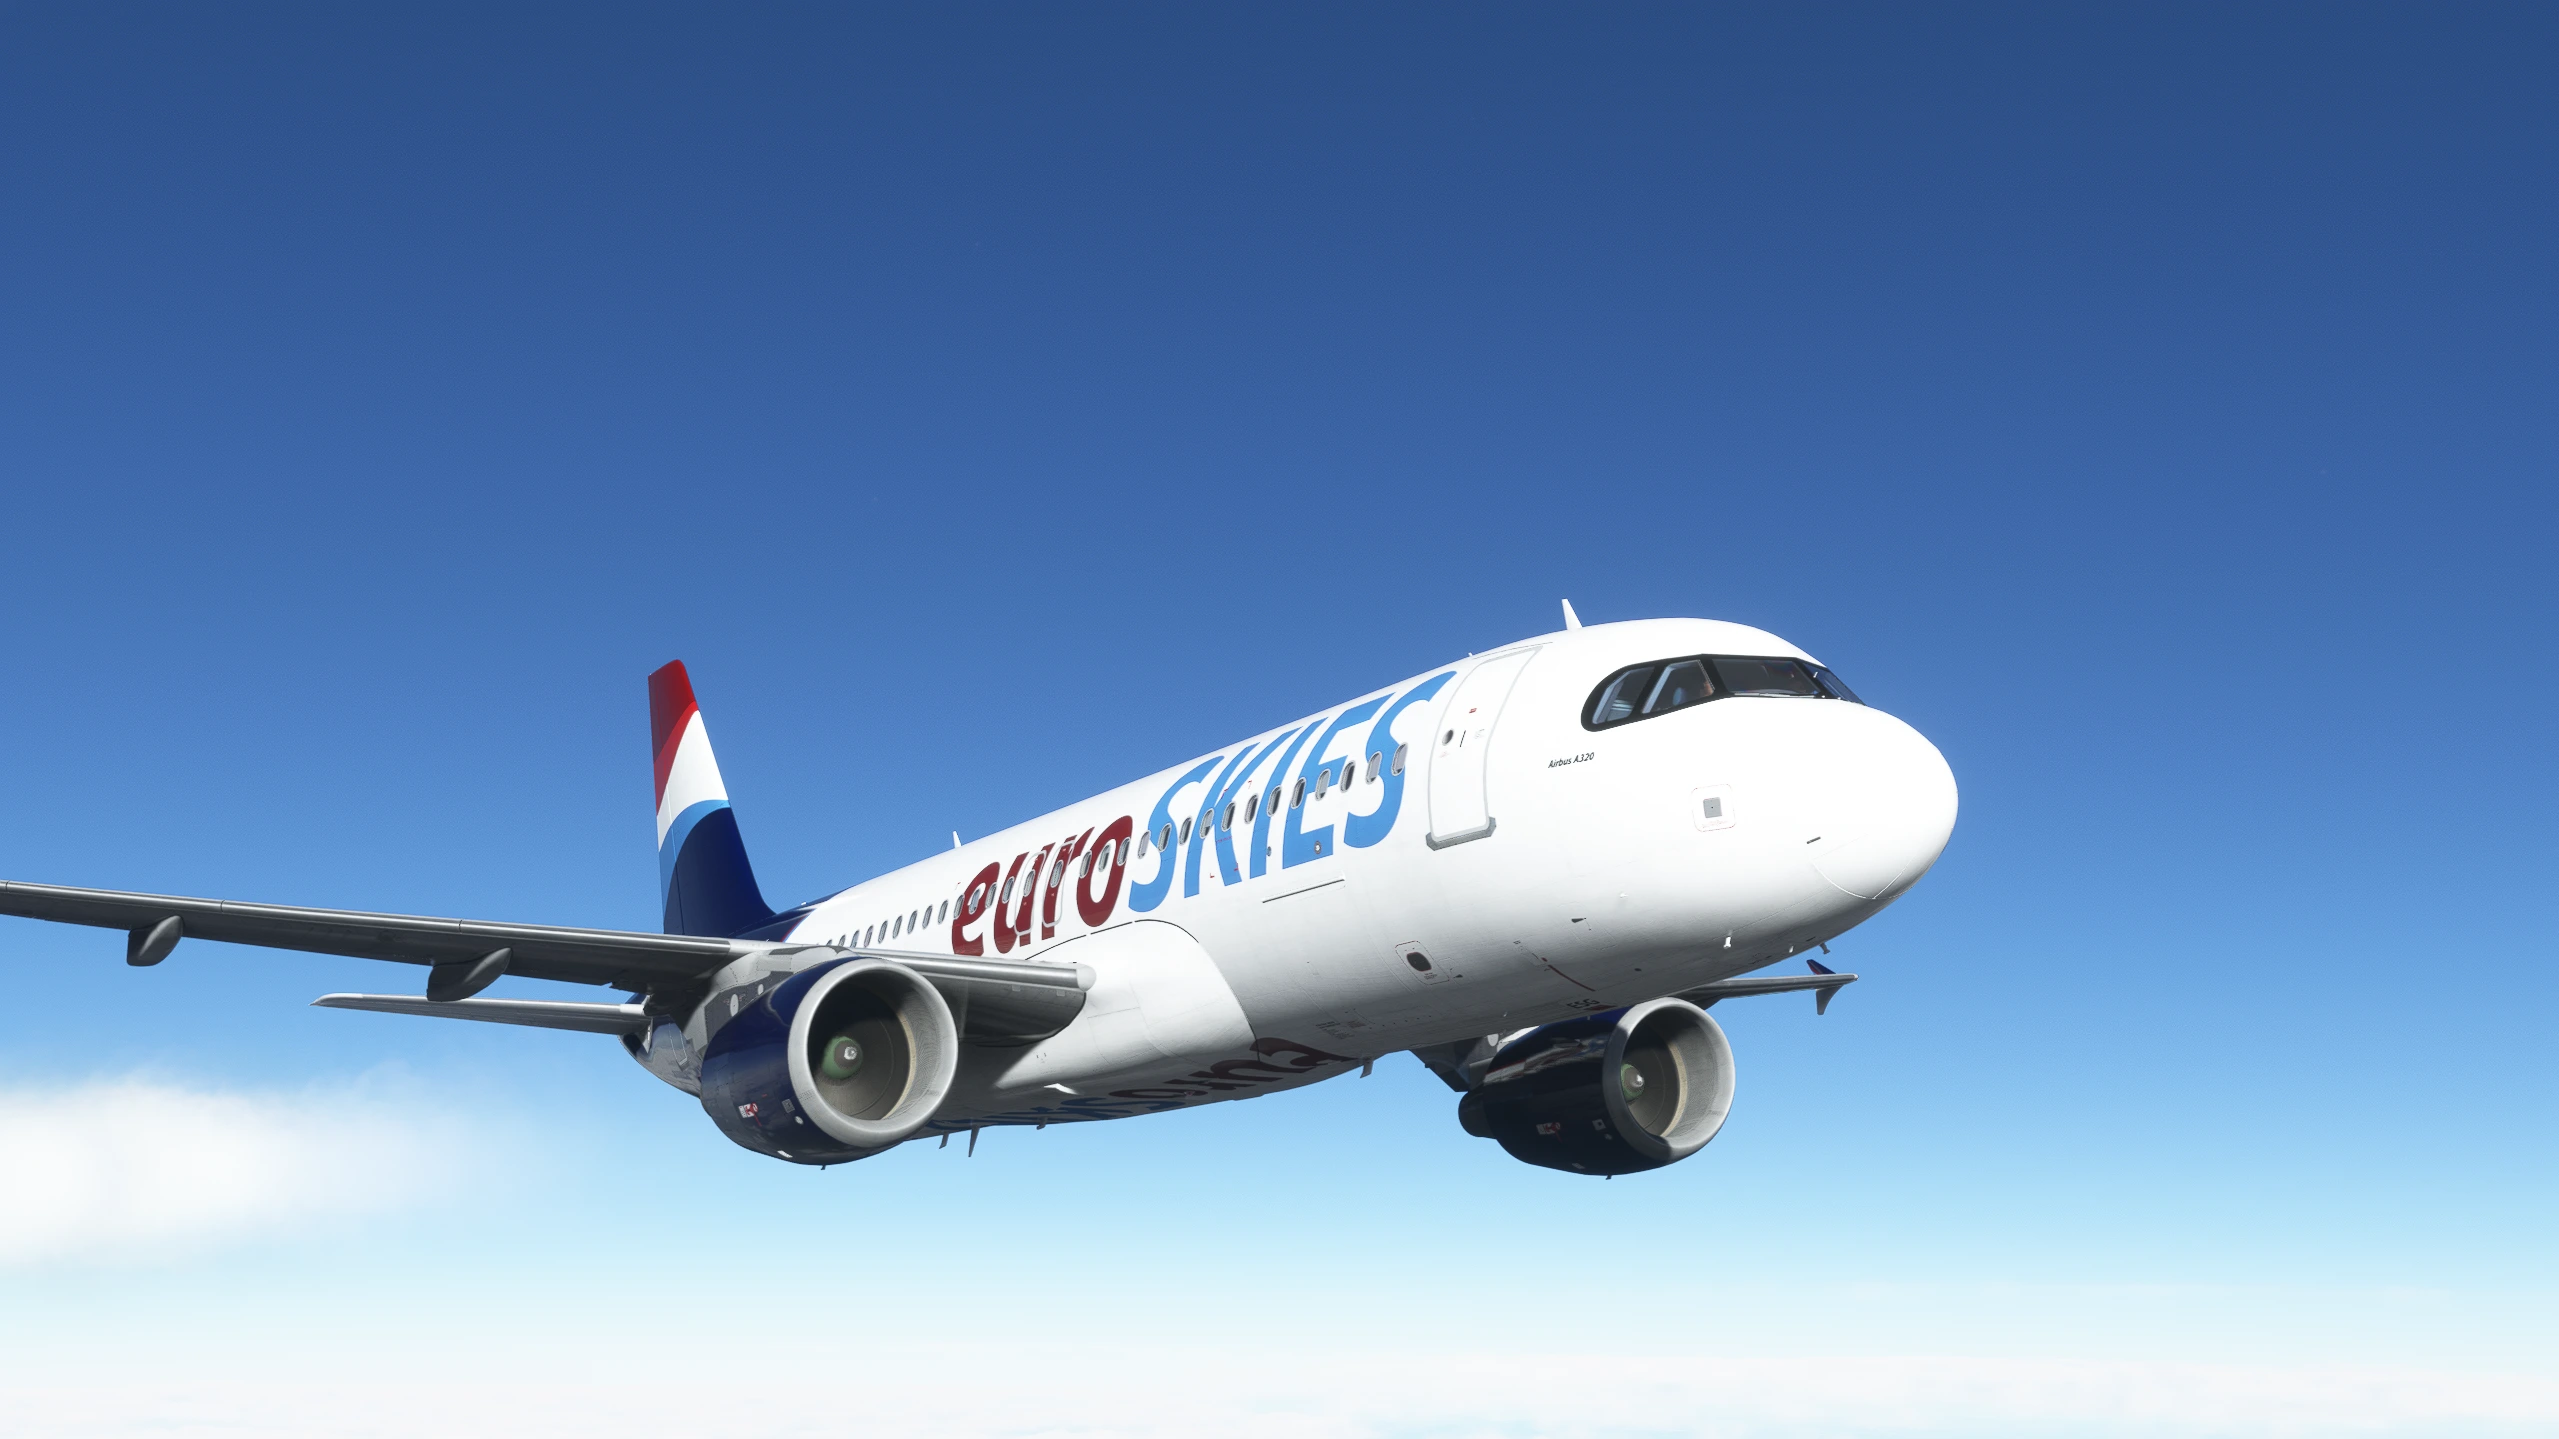 euroSKIES Airbus cruising in blue skies